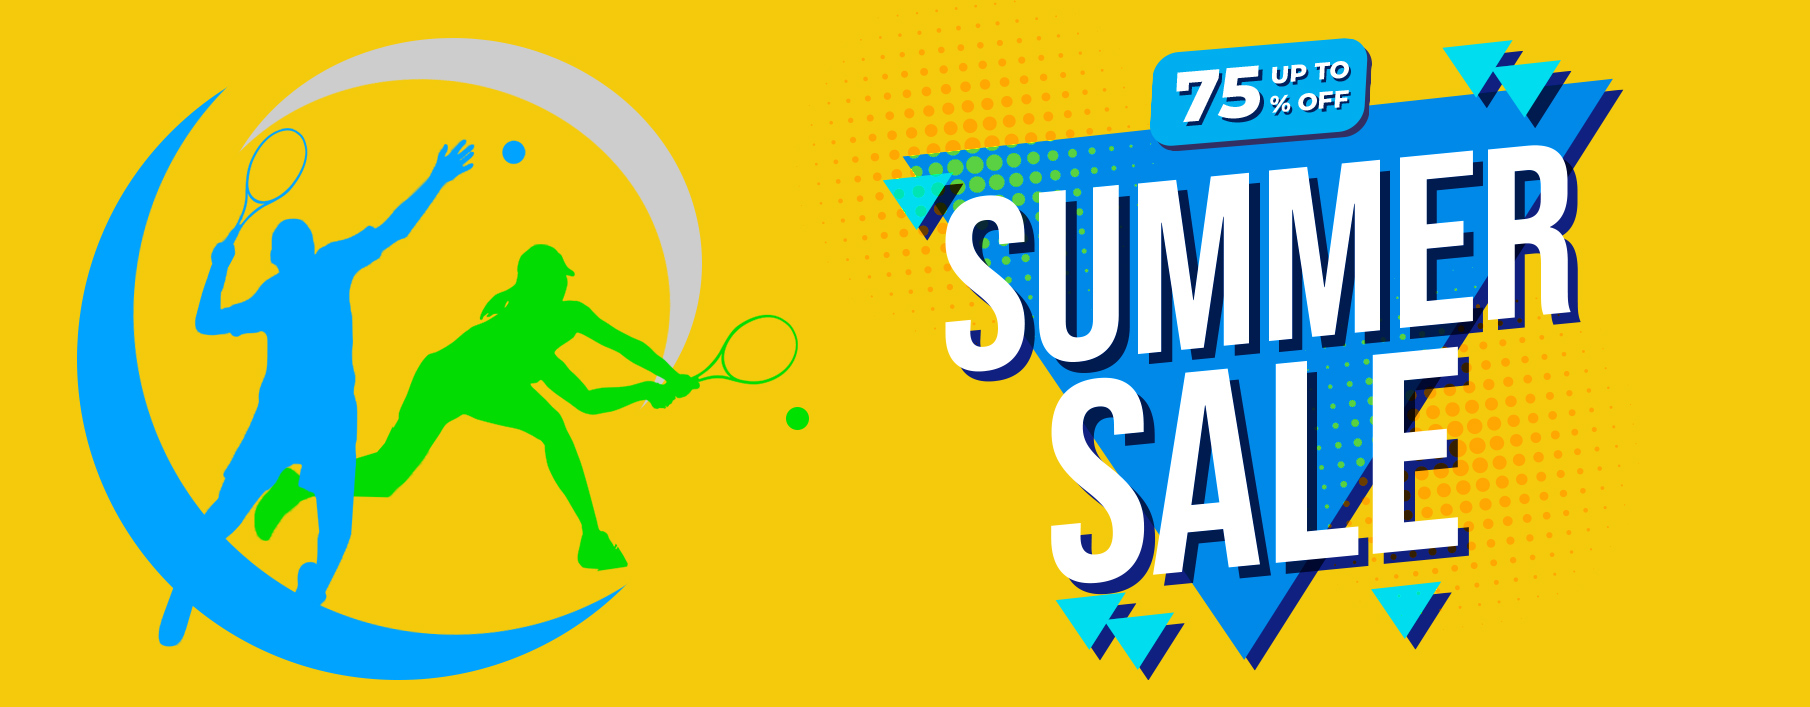 summer sale deals promos promotions tennis shoes apparel shoes racquets bags